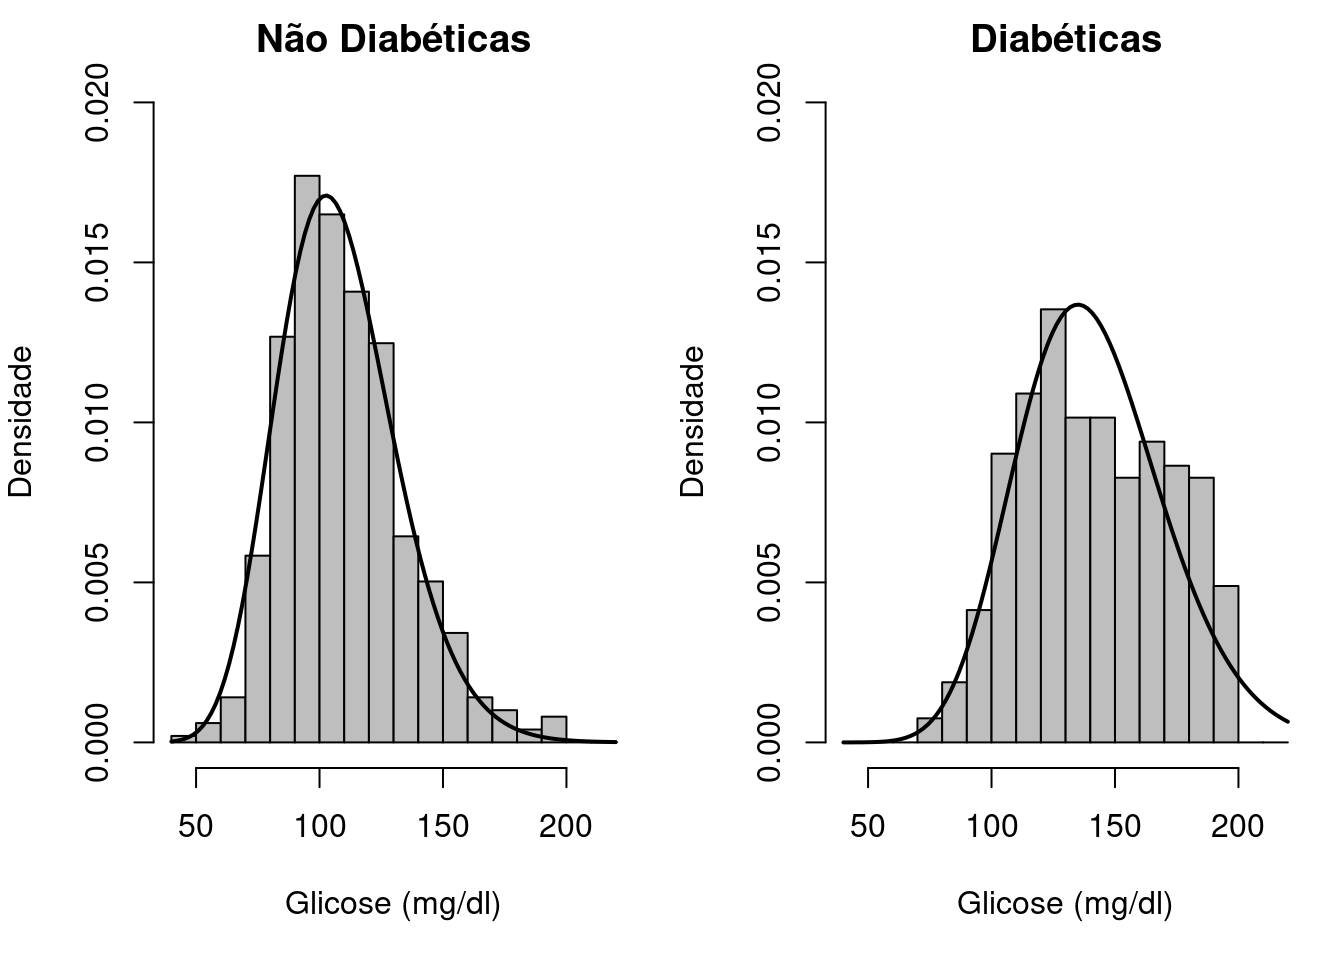 Histogramas da glicose de pacientes diabéticas e não diabéticas. Conjunto de dados: PimaIndiansDiabetes2 do pacote mlbench (GPL-2).